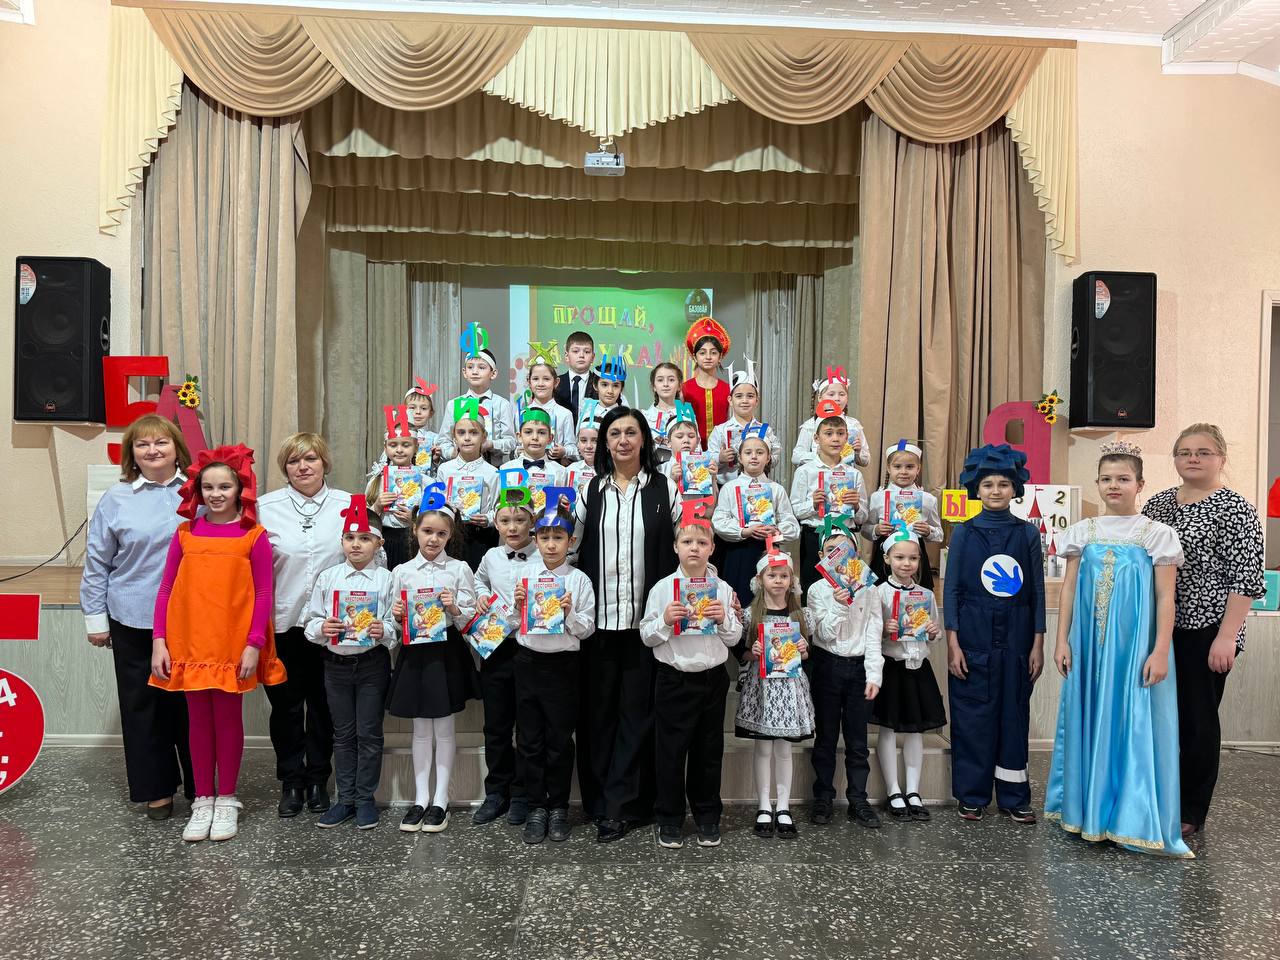 14 марта в Базовой общеобразовательной школе Филиала СГПИ в г. Железноводске прошел праздник «Прощай, Азбука!» для обучающихся 1 класса.